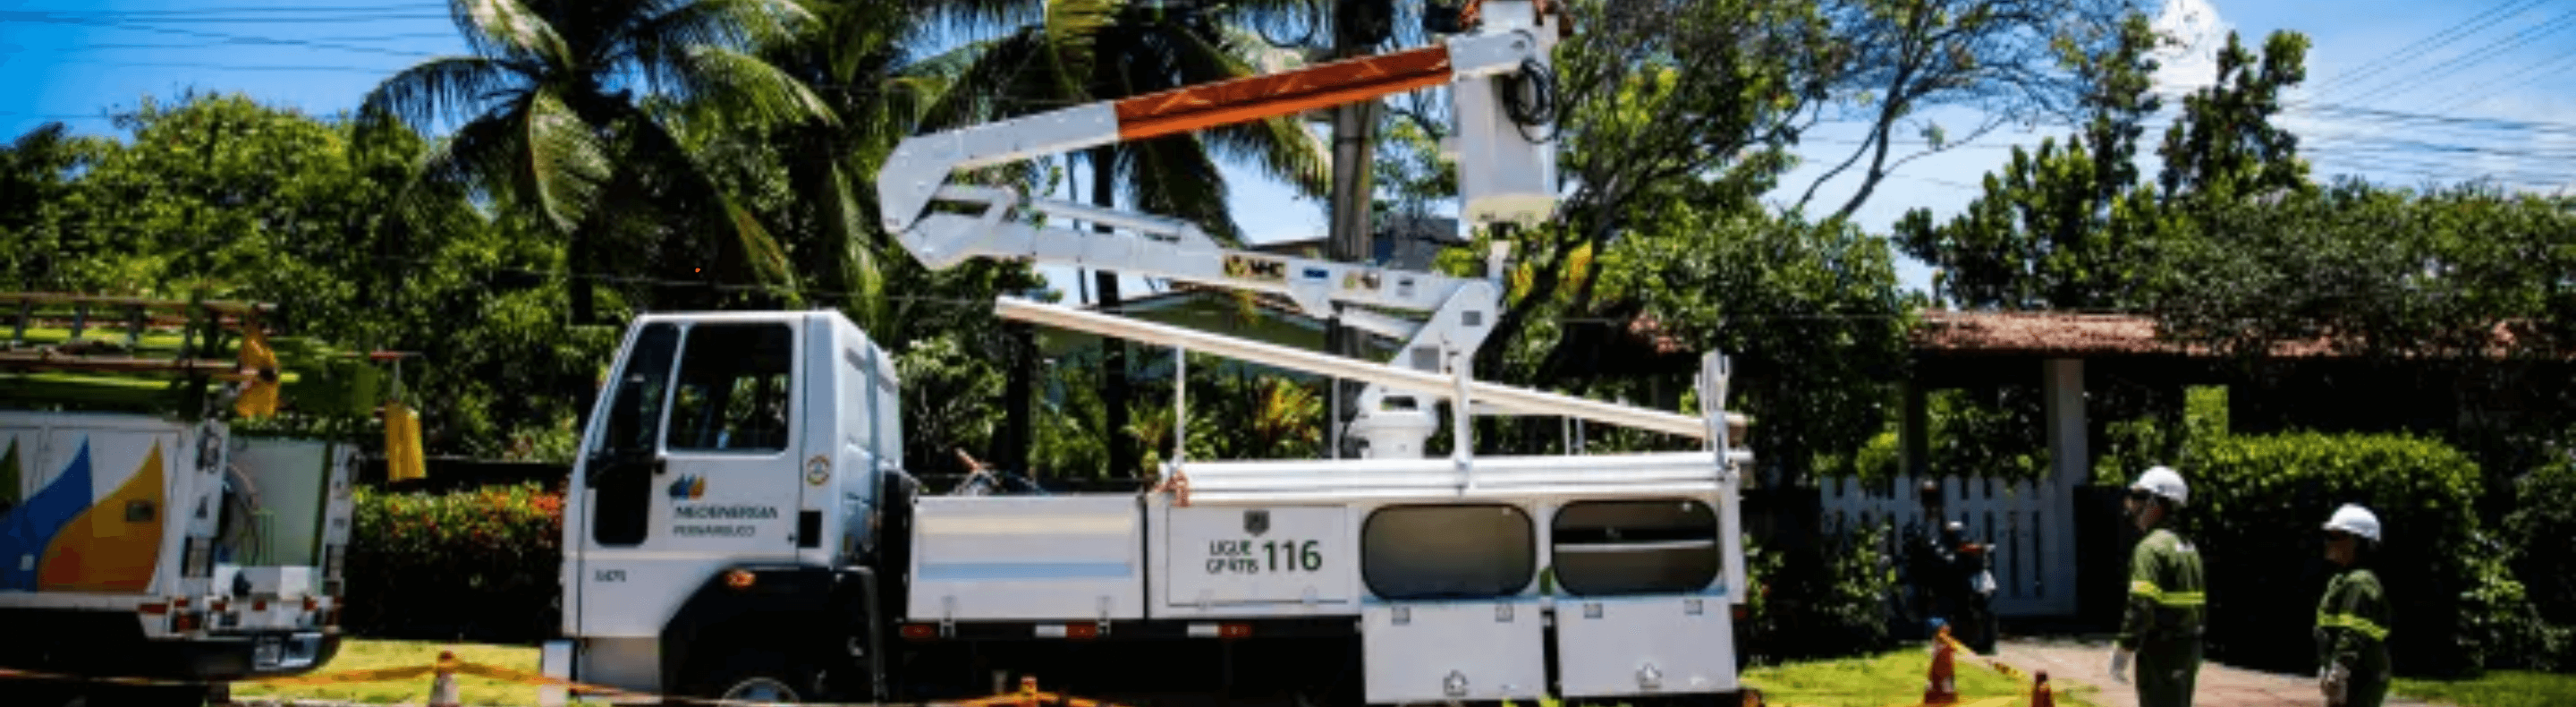 Caminhão de linha viva da Neoenergia Pernambuco em funcionamento 